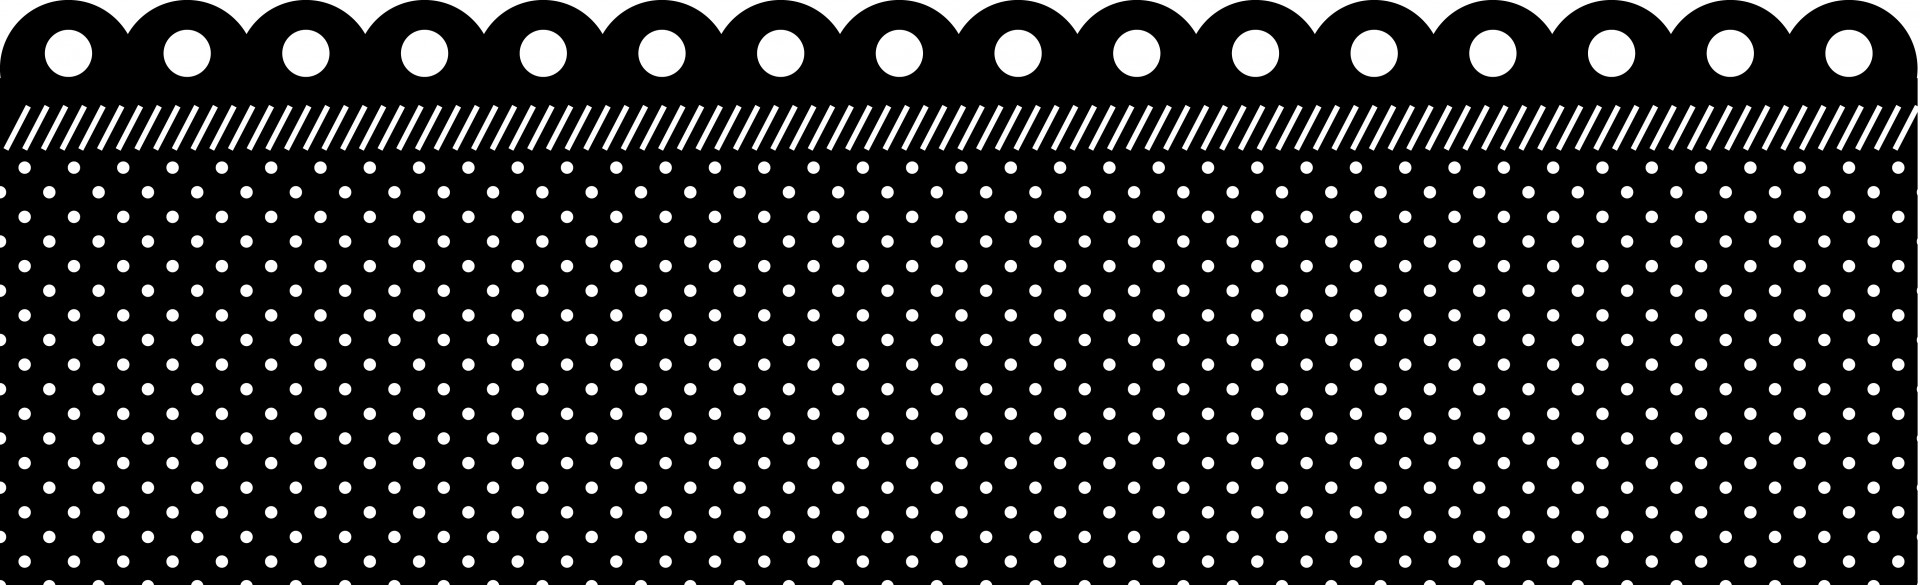 polka dots spots dots free photo